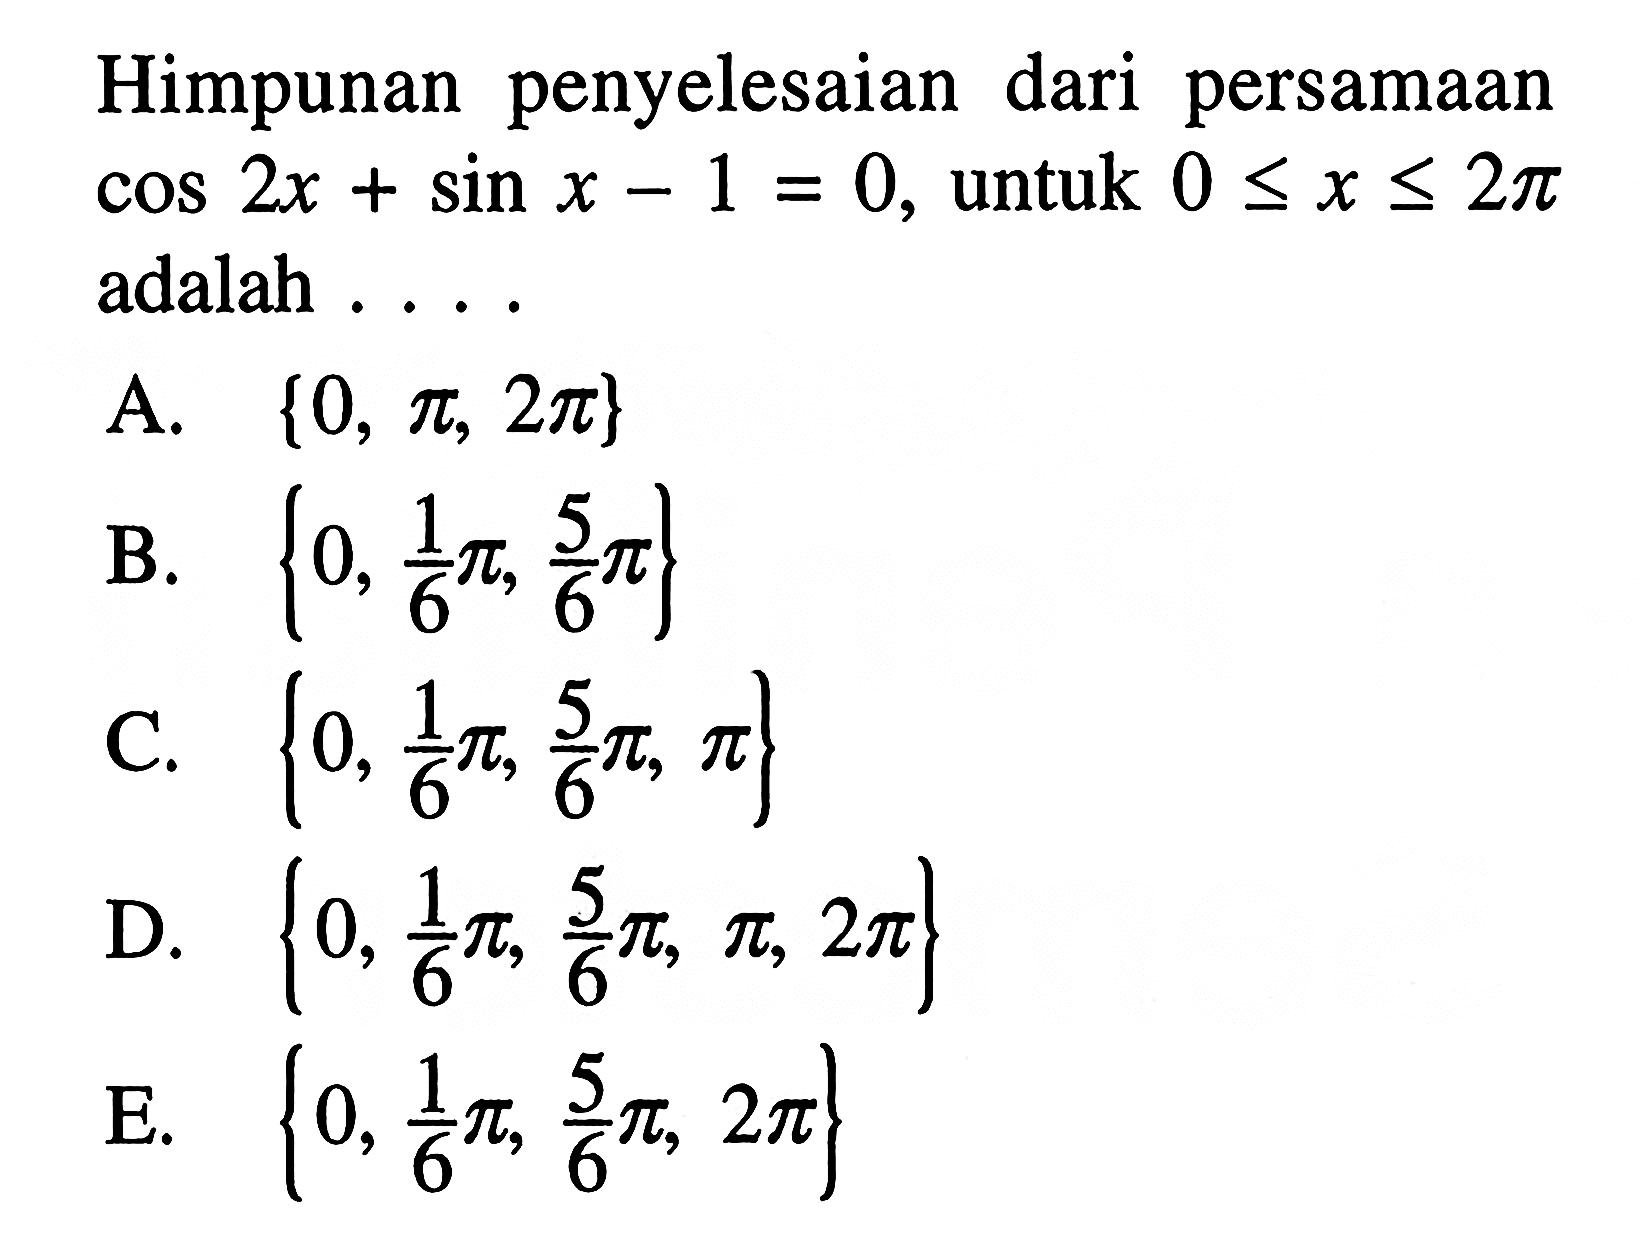 Himpunan penyelesaian dari persamaan cos 2x + sin x - 1 = 0, untuk 0 < x < 2pi adalah